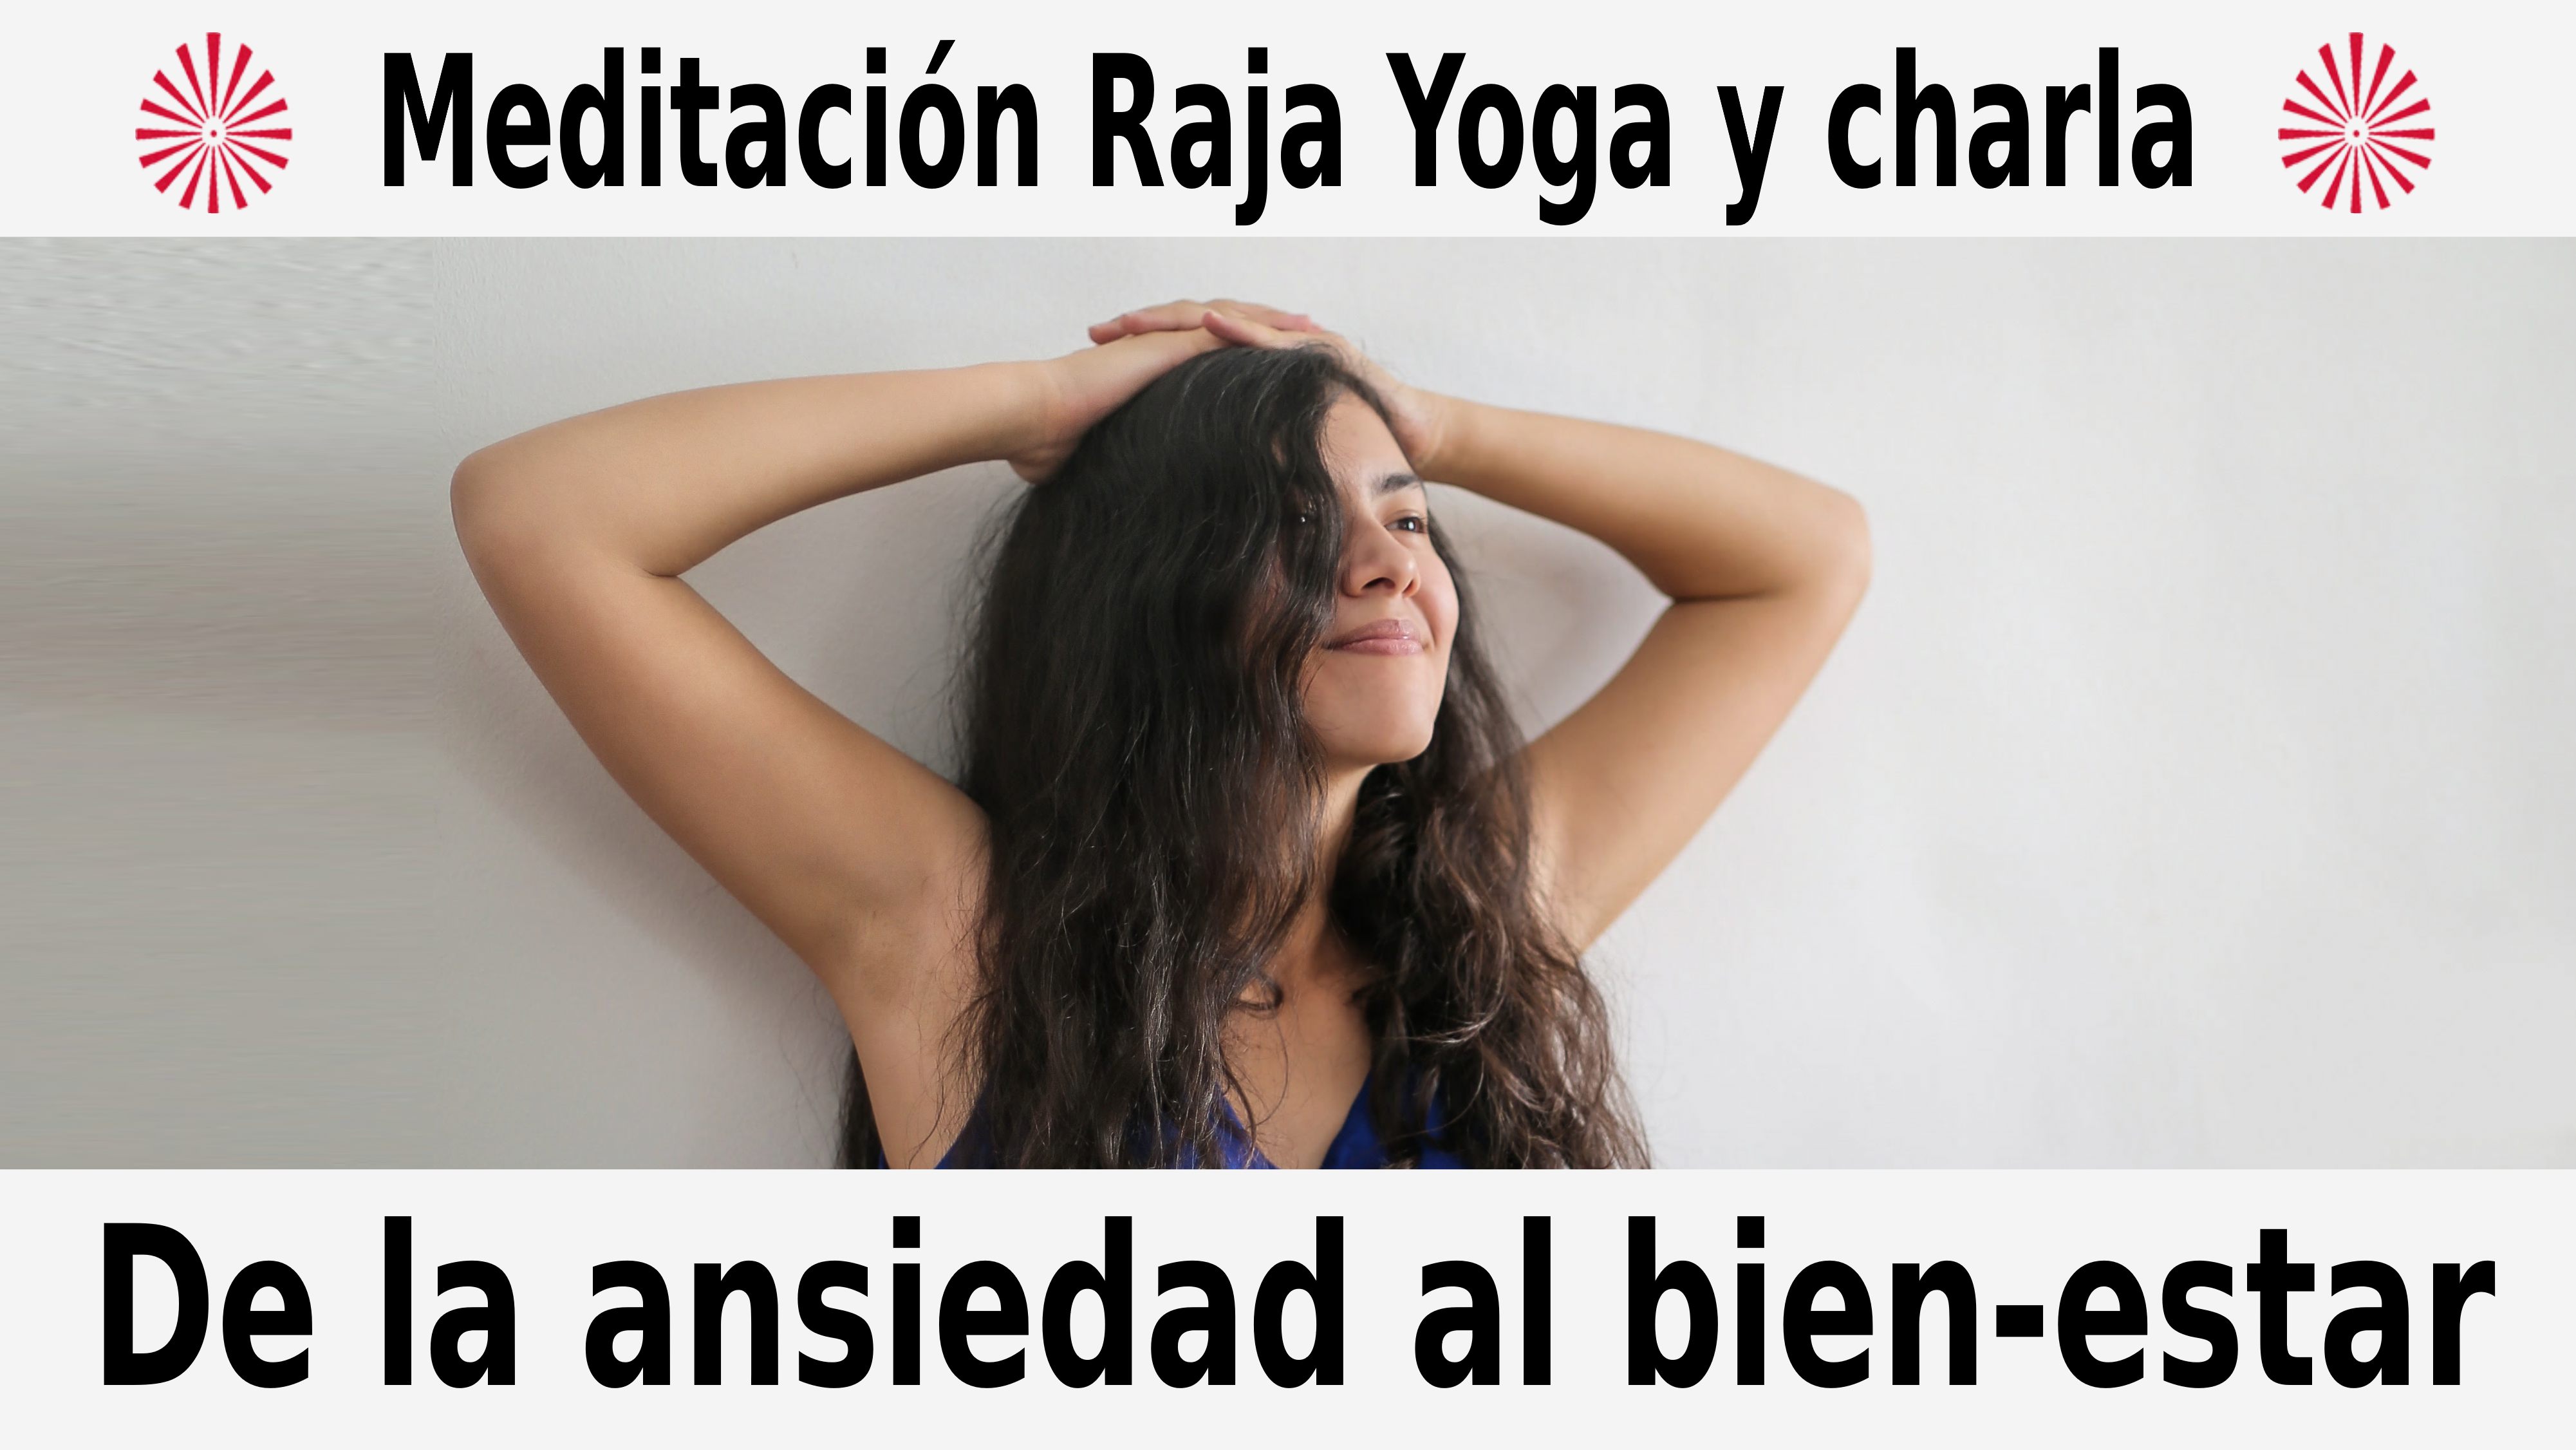 Meditación Raja Yoga y charla: De la ansiedad al bien-estar (10 Diciembre 2020) On-line desde Barcelona